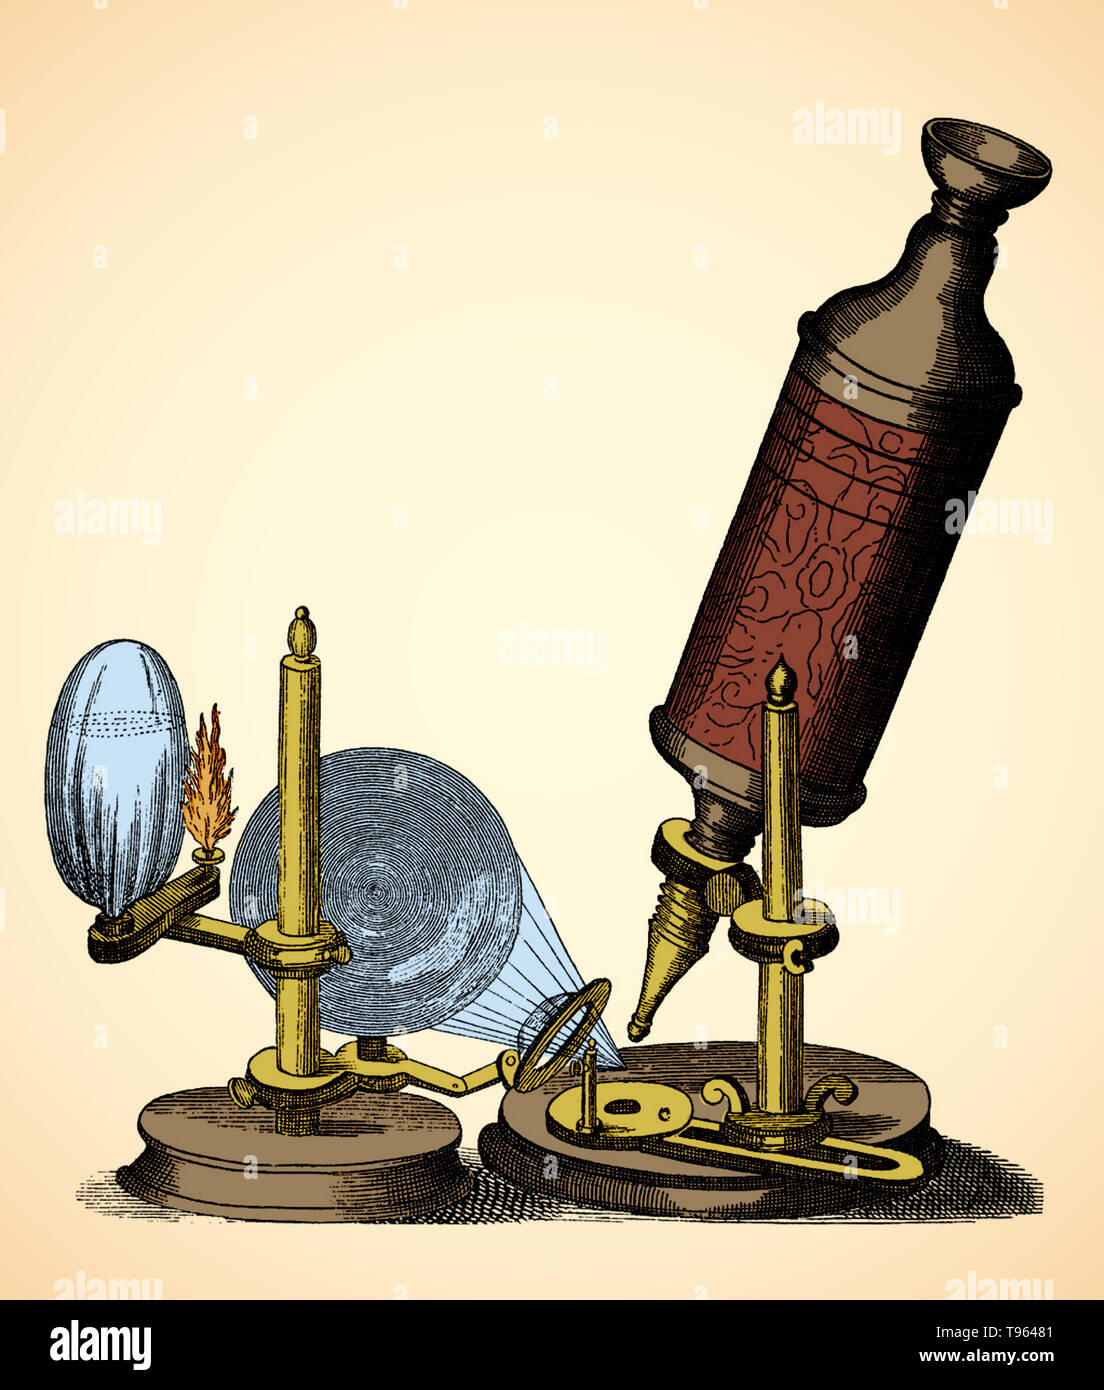 La main, le cuir et or estampée à Robert Hooke microscope utilisé pour faire les observations de Micrographia (1665), a été construite par Christopher White à Londres. Le microscope partage plusieurs caractéristiques communes avec des télescopes de l'époque : une œillère de maintenir la bonne distance entre l'œil et de l'oculaire, séparer les tubes de tirage pour concentrer, et un joint à rotule pour incliner le corps. Banque D'Images